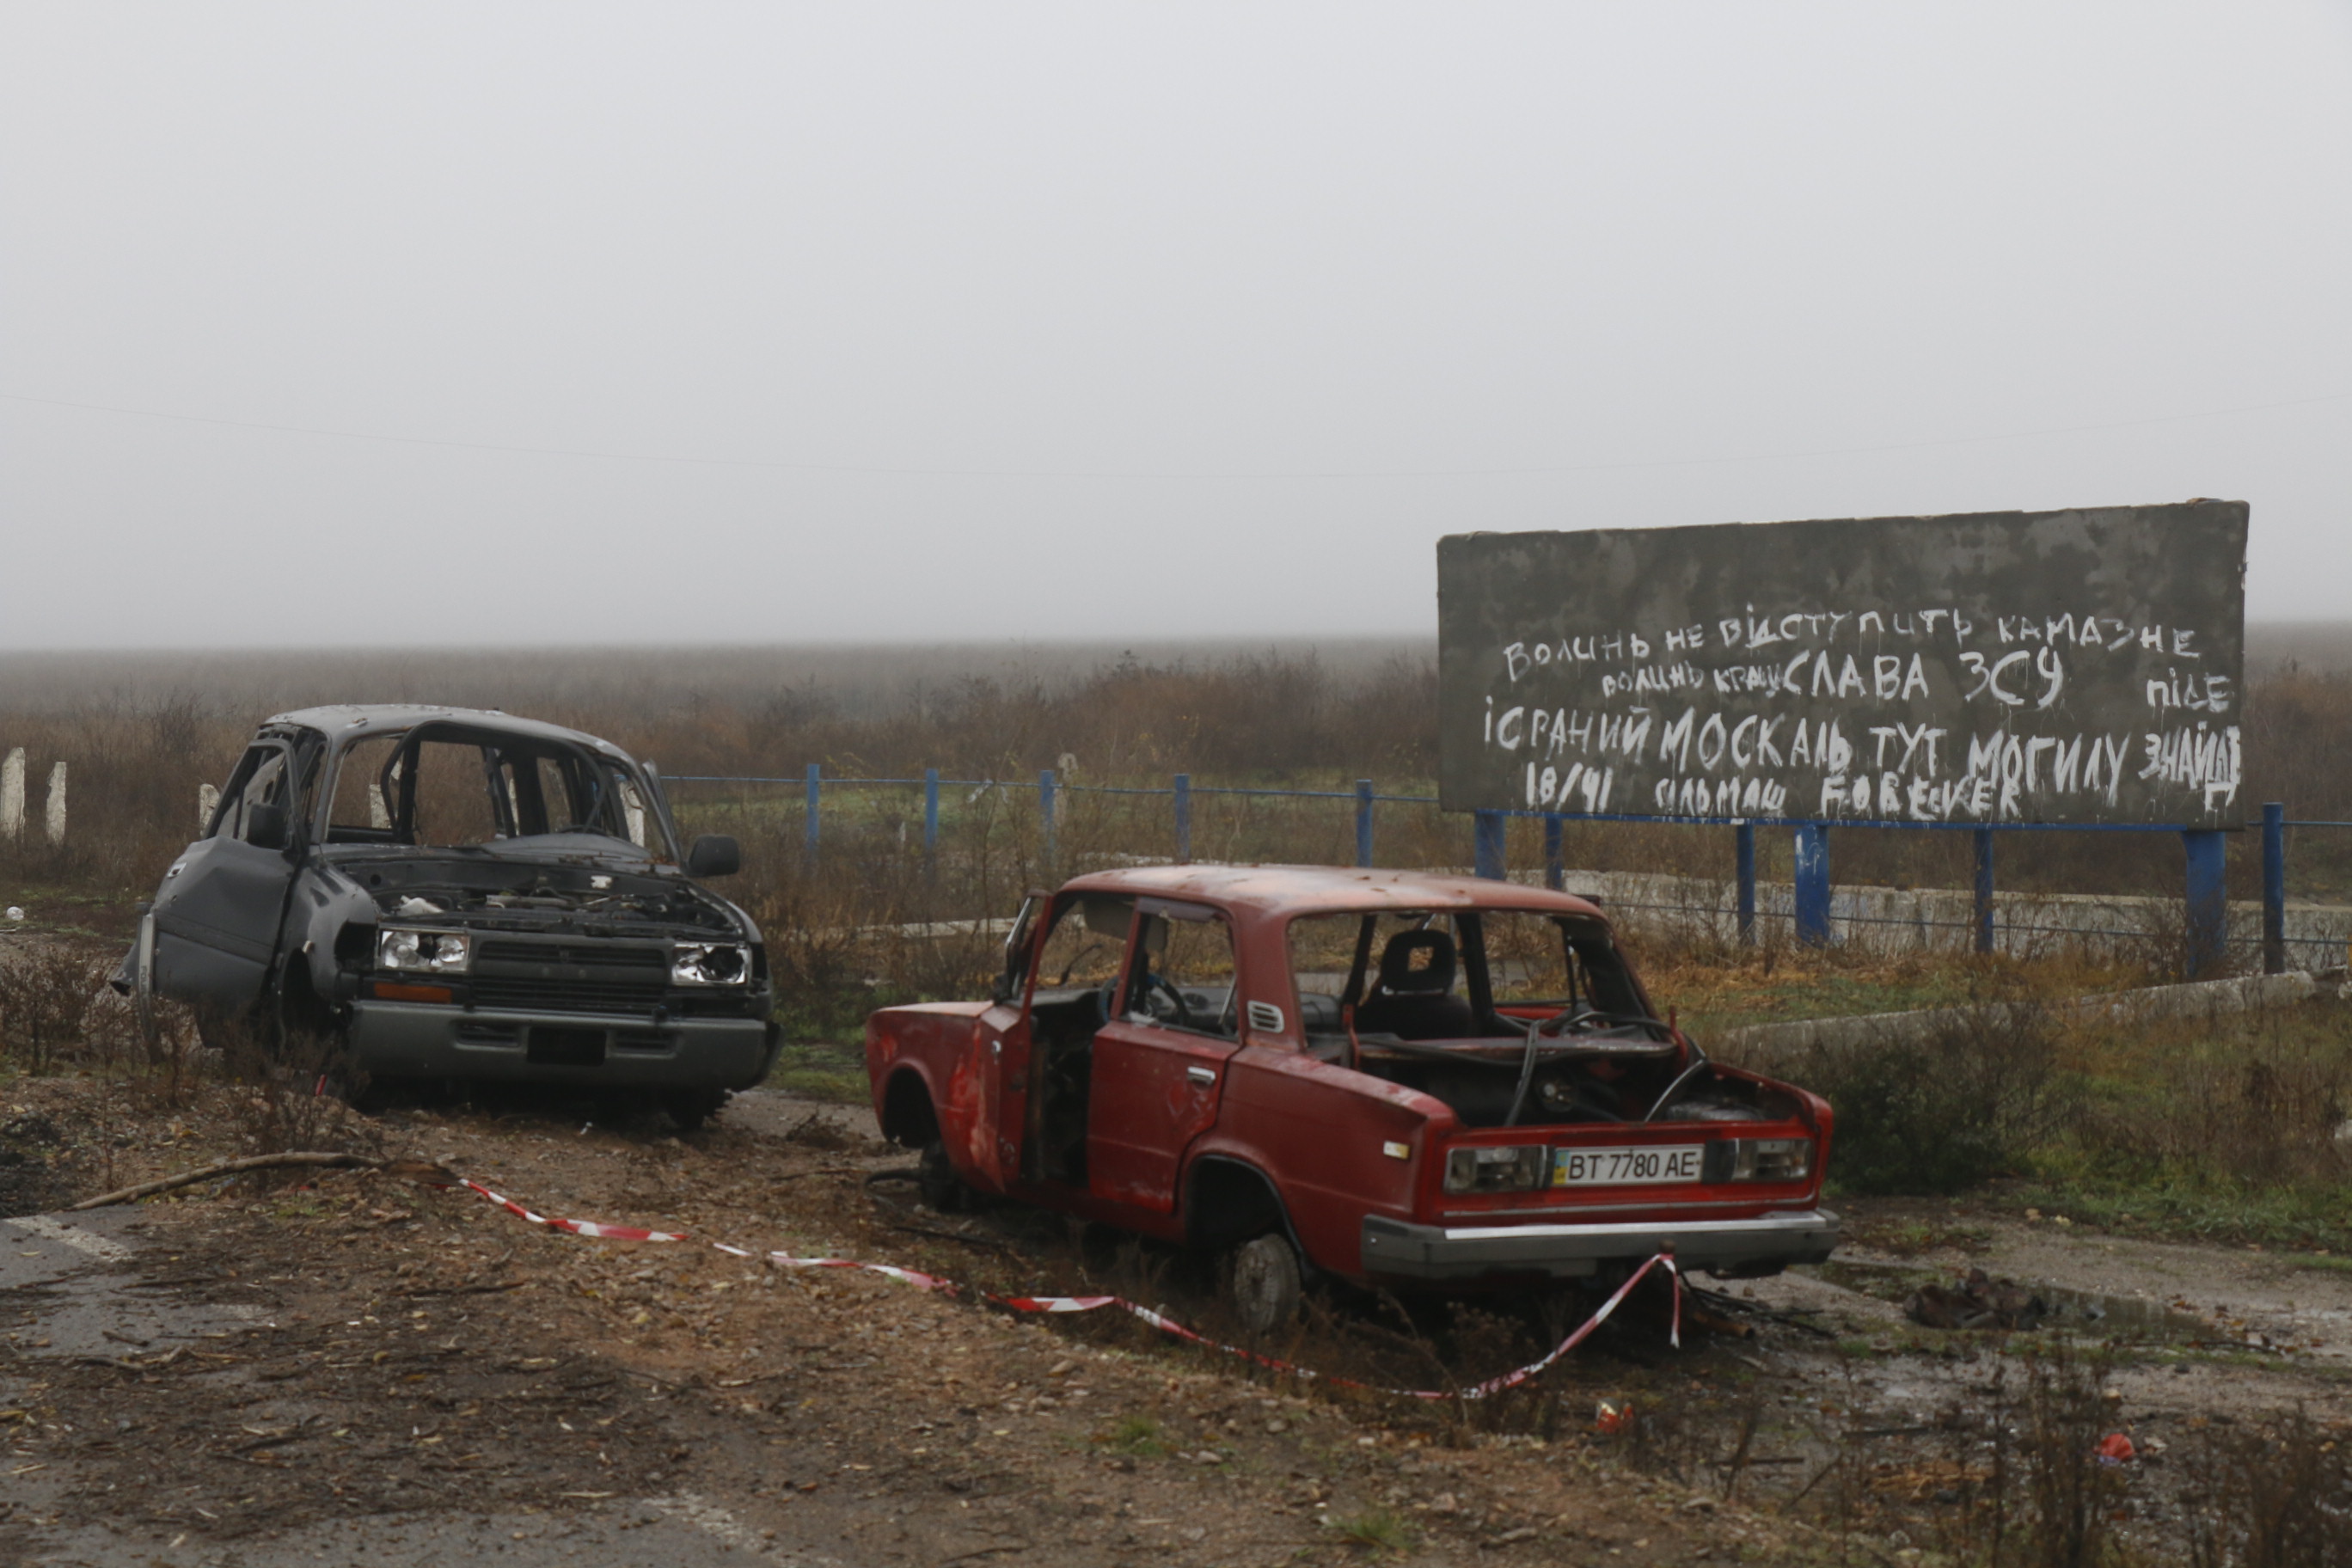 Civilian investigators collect evidence of Russian war crimes in Ukraine